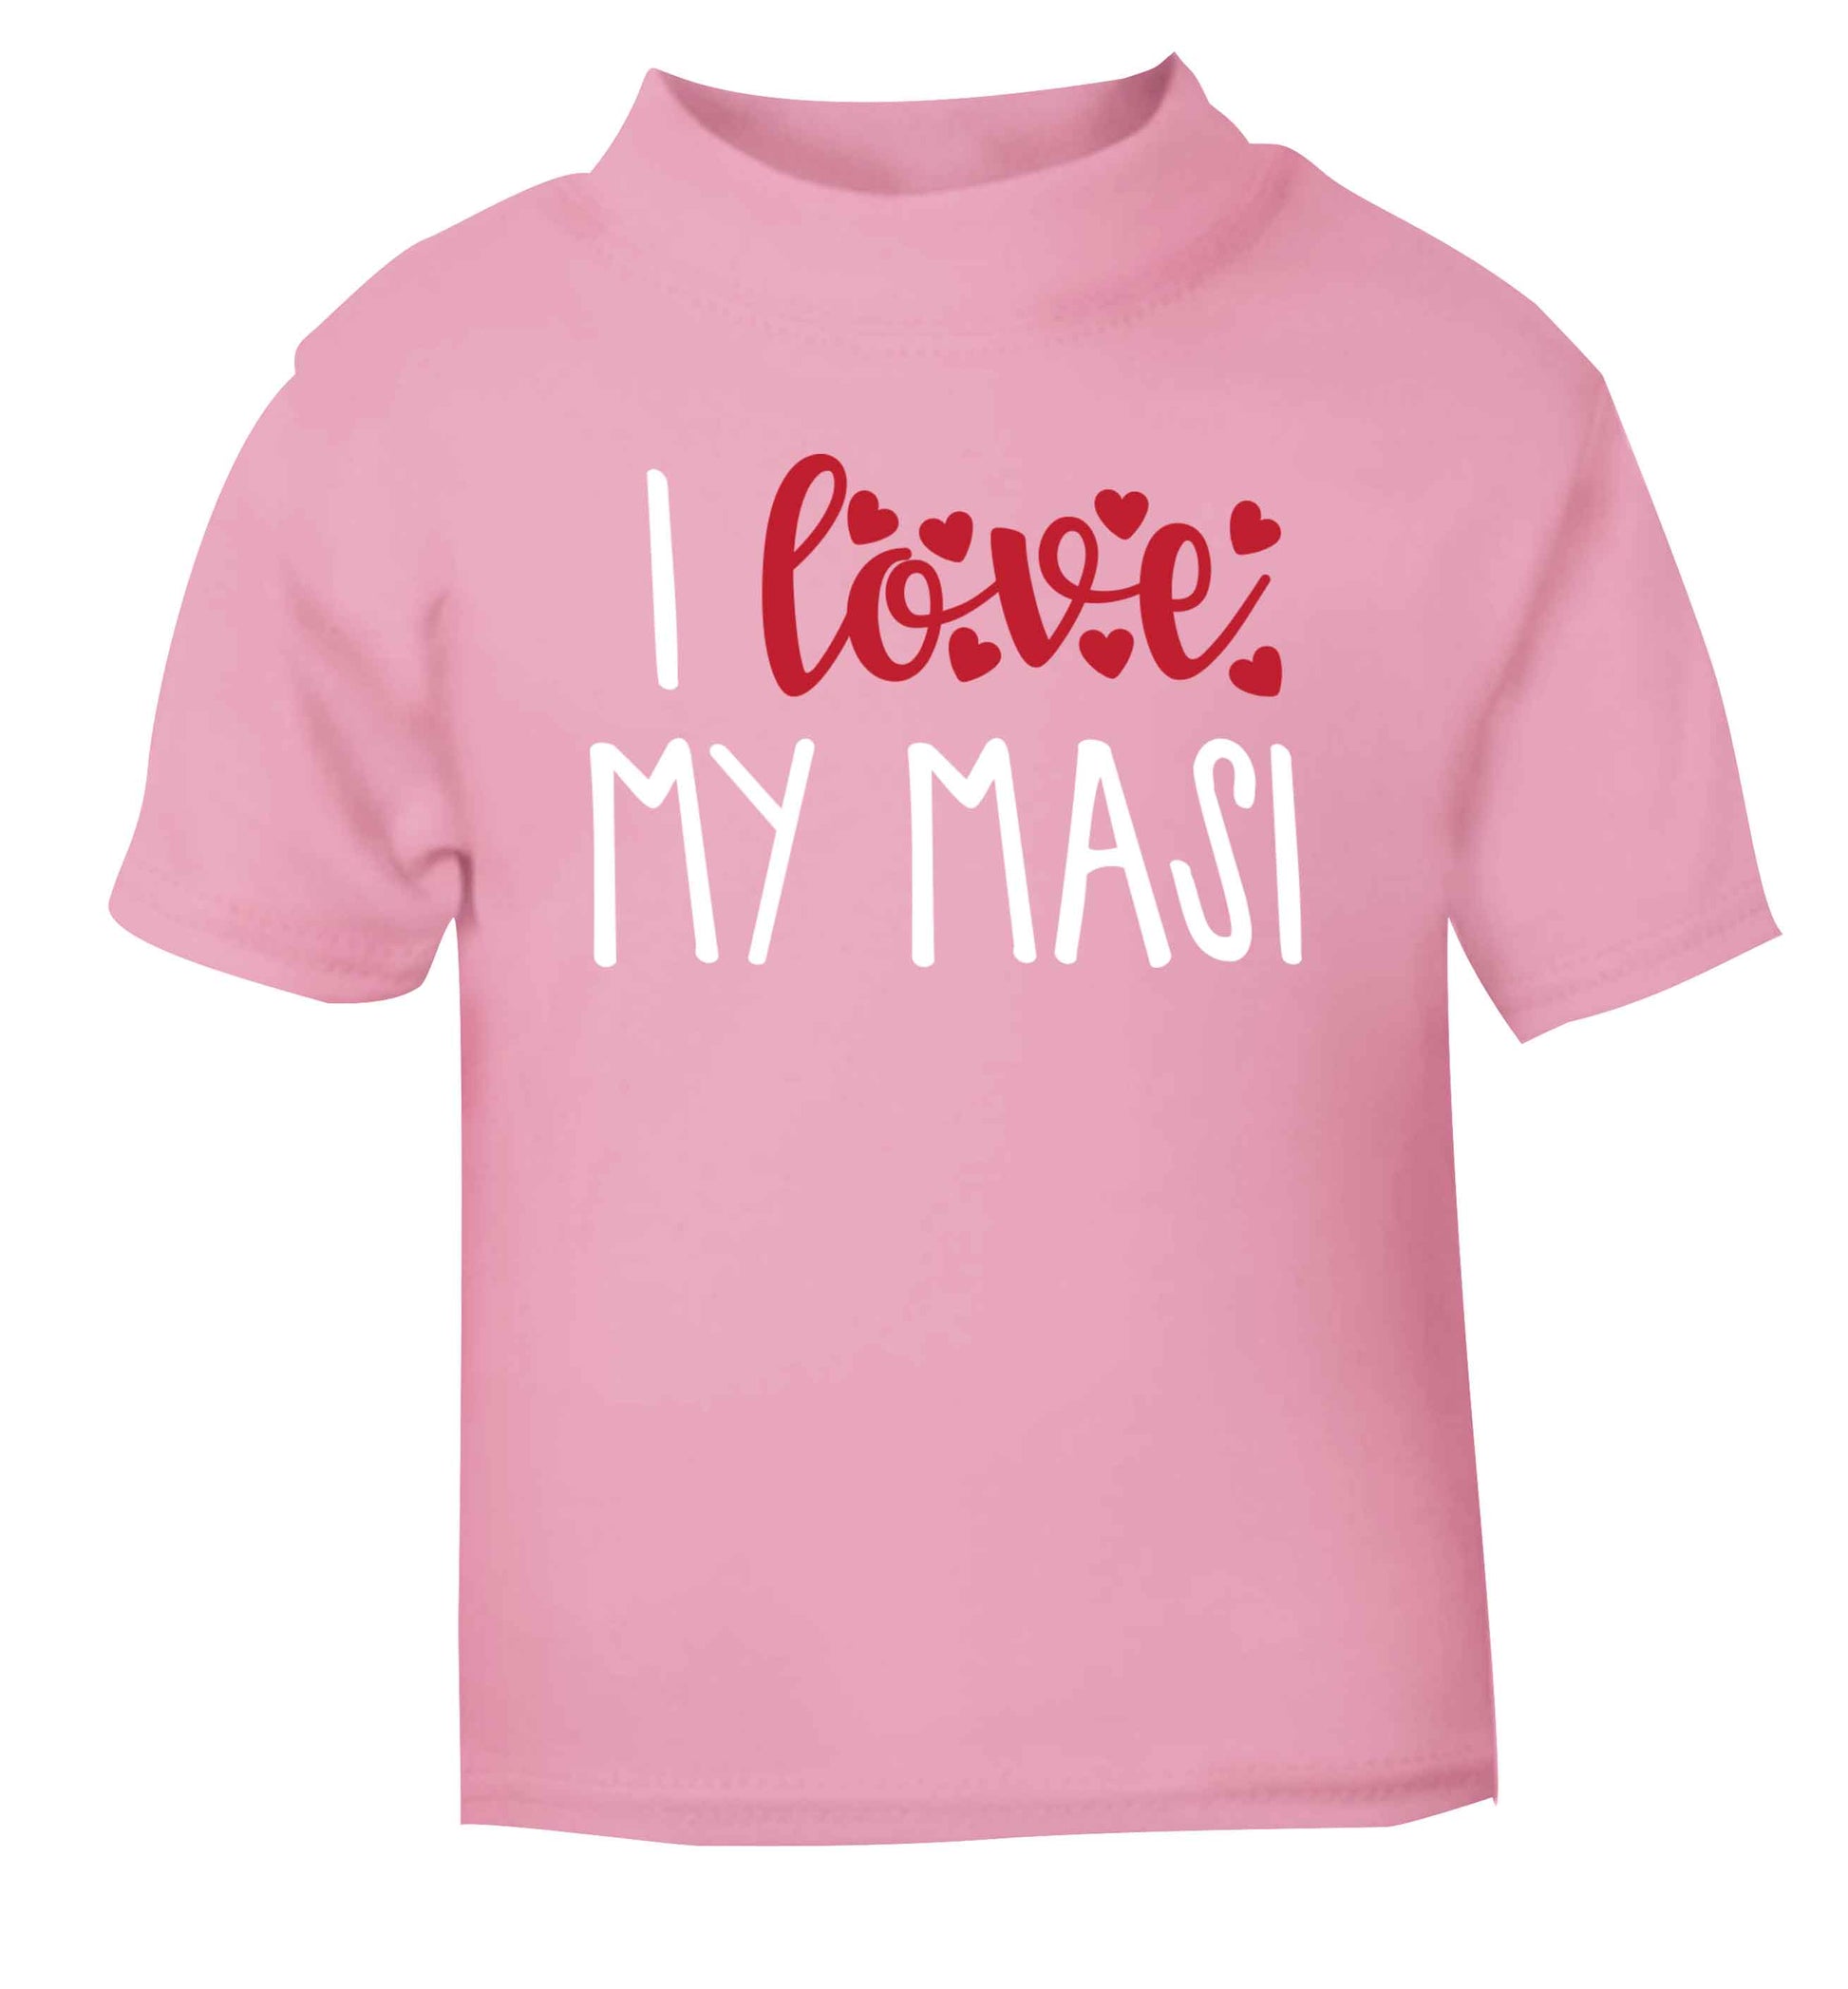 I love my masi light pink Baby Toddler Tshirt 2 Years